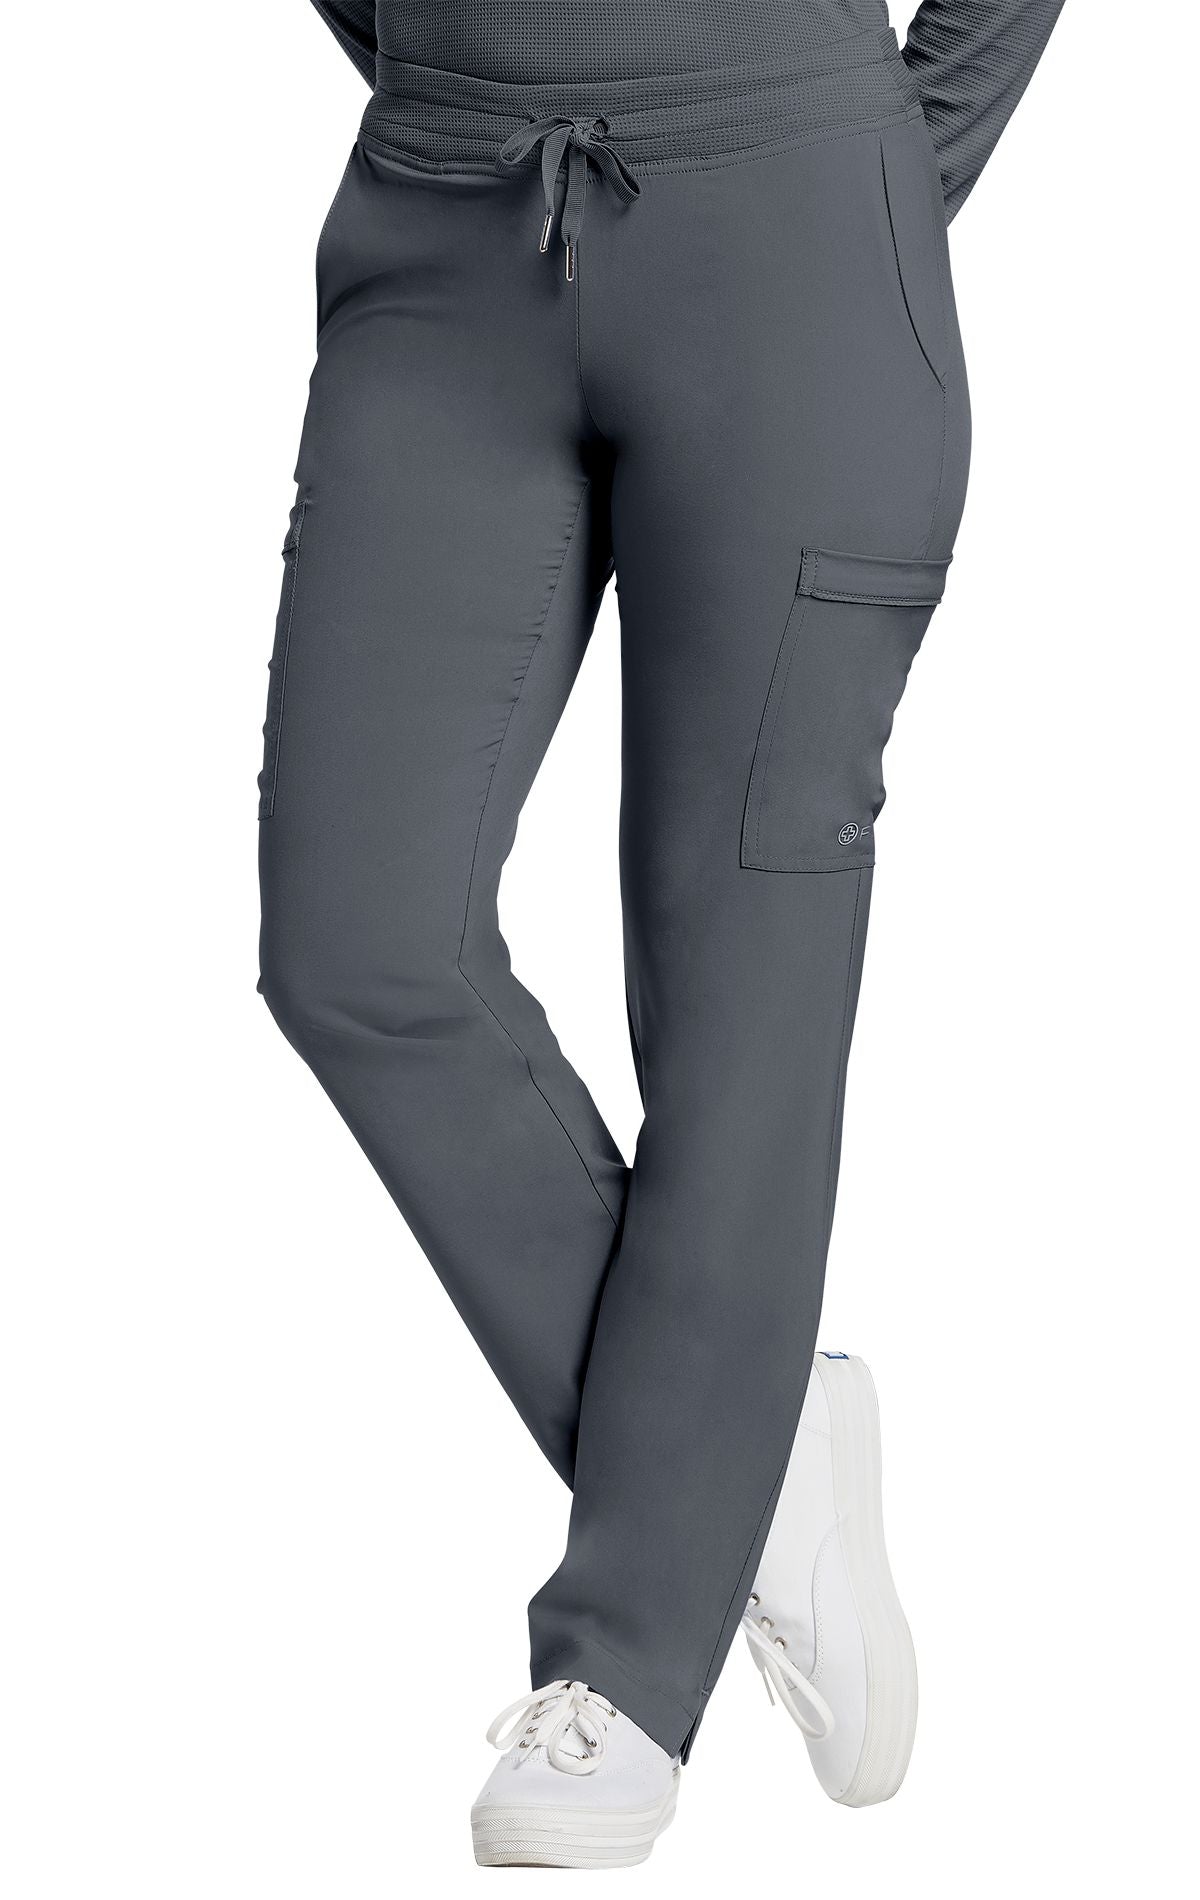 Pantalon femme droit - FIT - 373T long